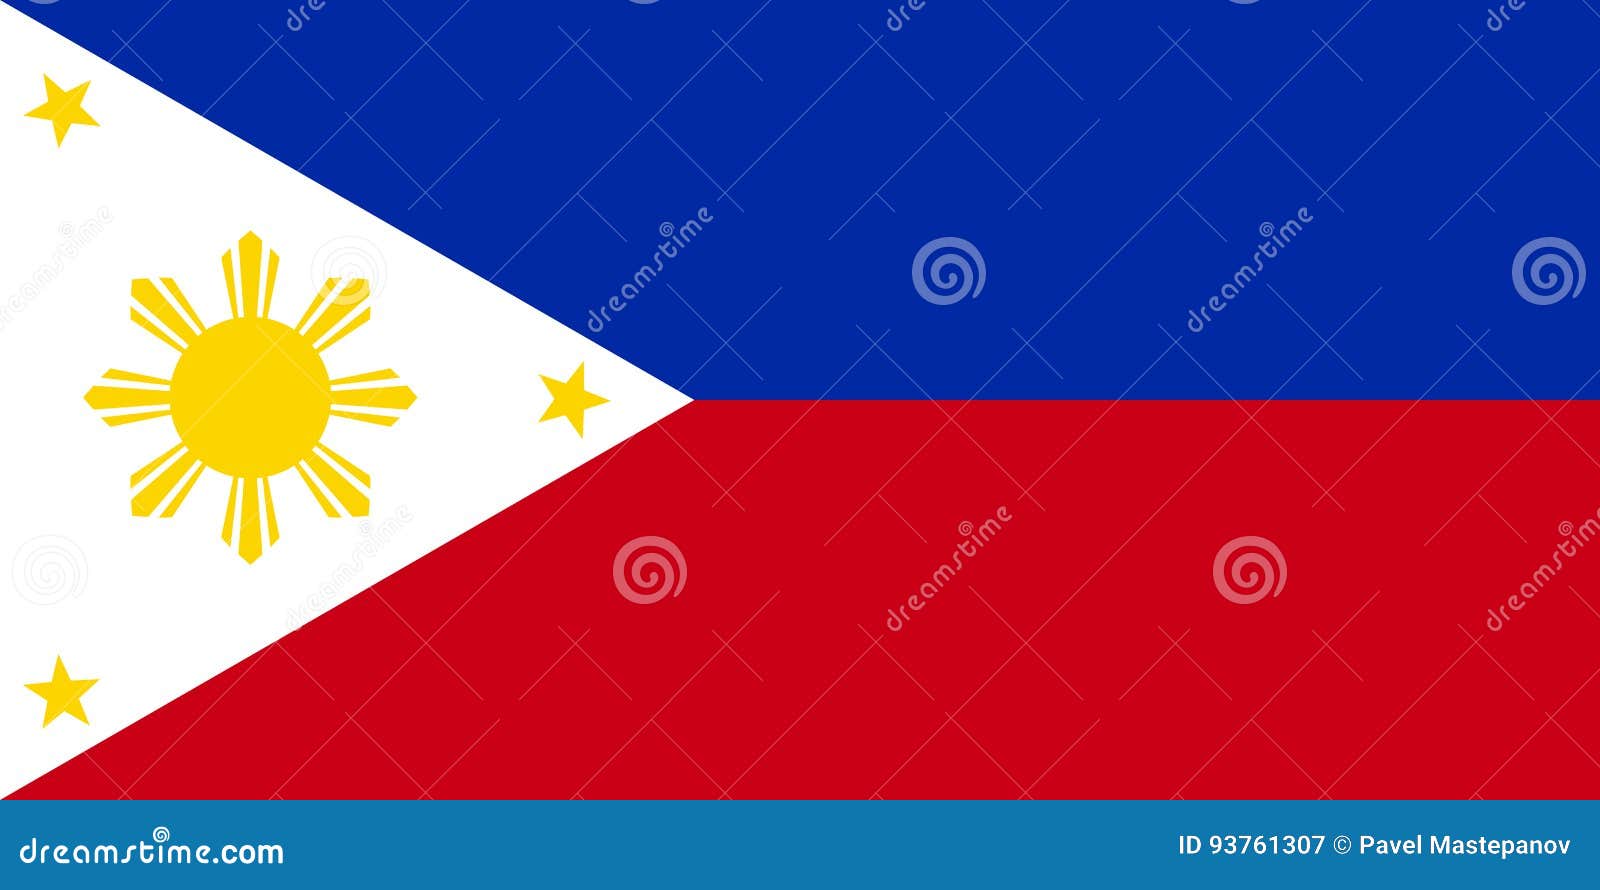 philippine flag 